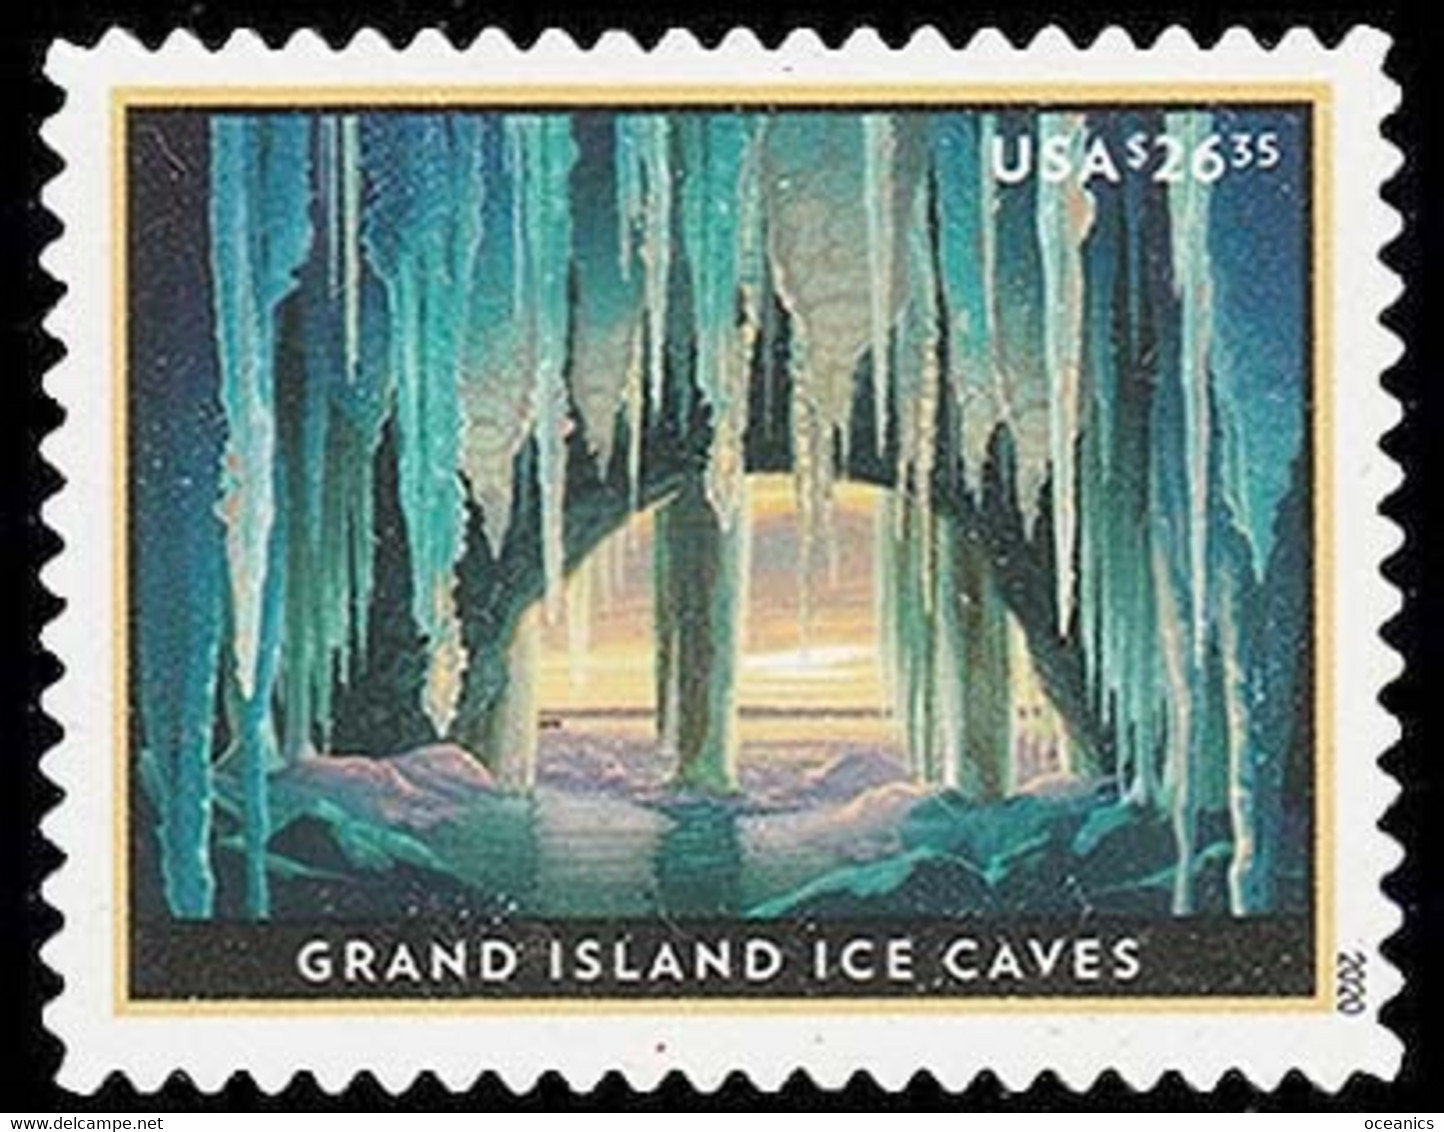 Etats-Unis / United States (Scott No.5430 - Grand Island Ice Caves, Michigan) [**] MHN - Ongebruikt